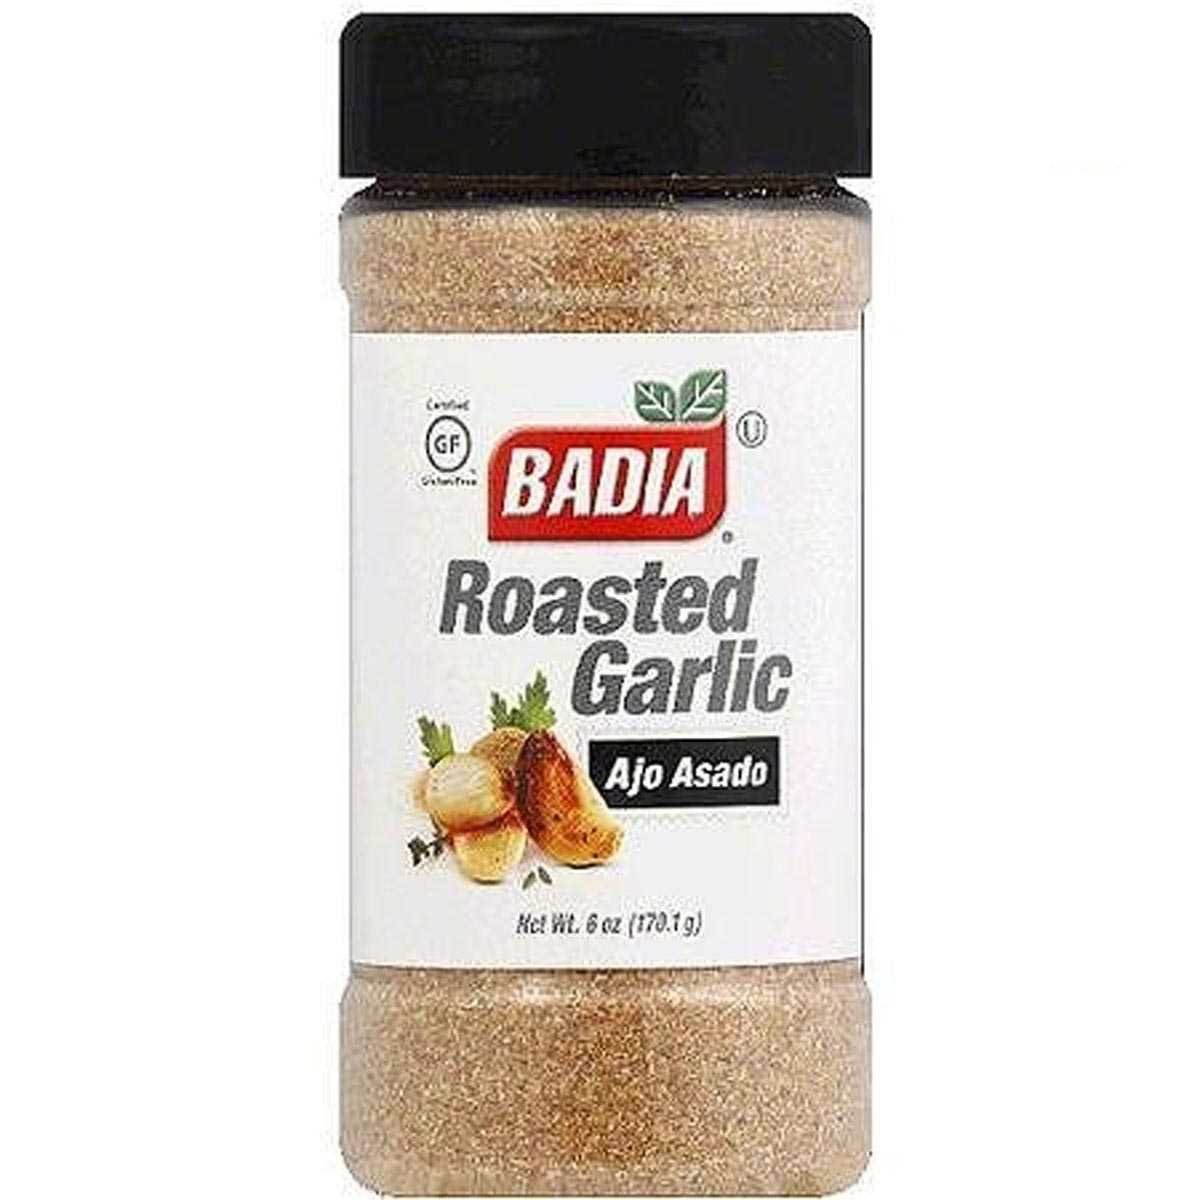 Picture of Badia KHFM00123835 Roasted Garlic, 6 oz